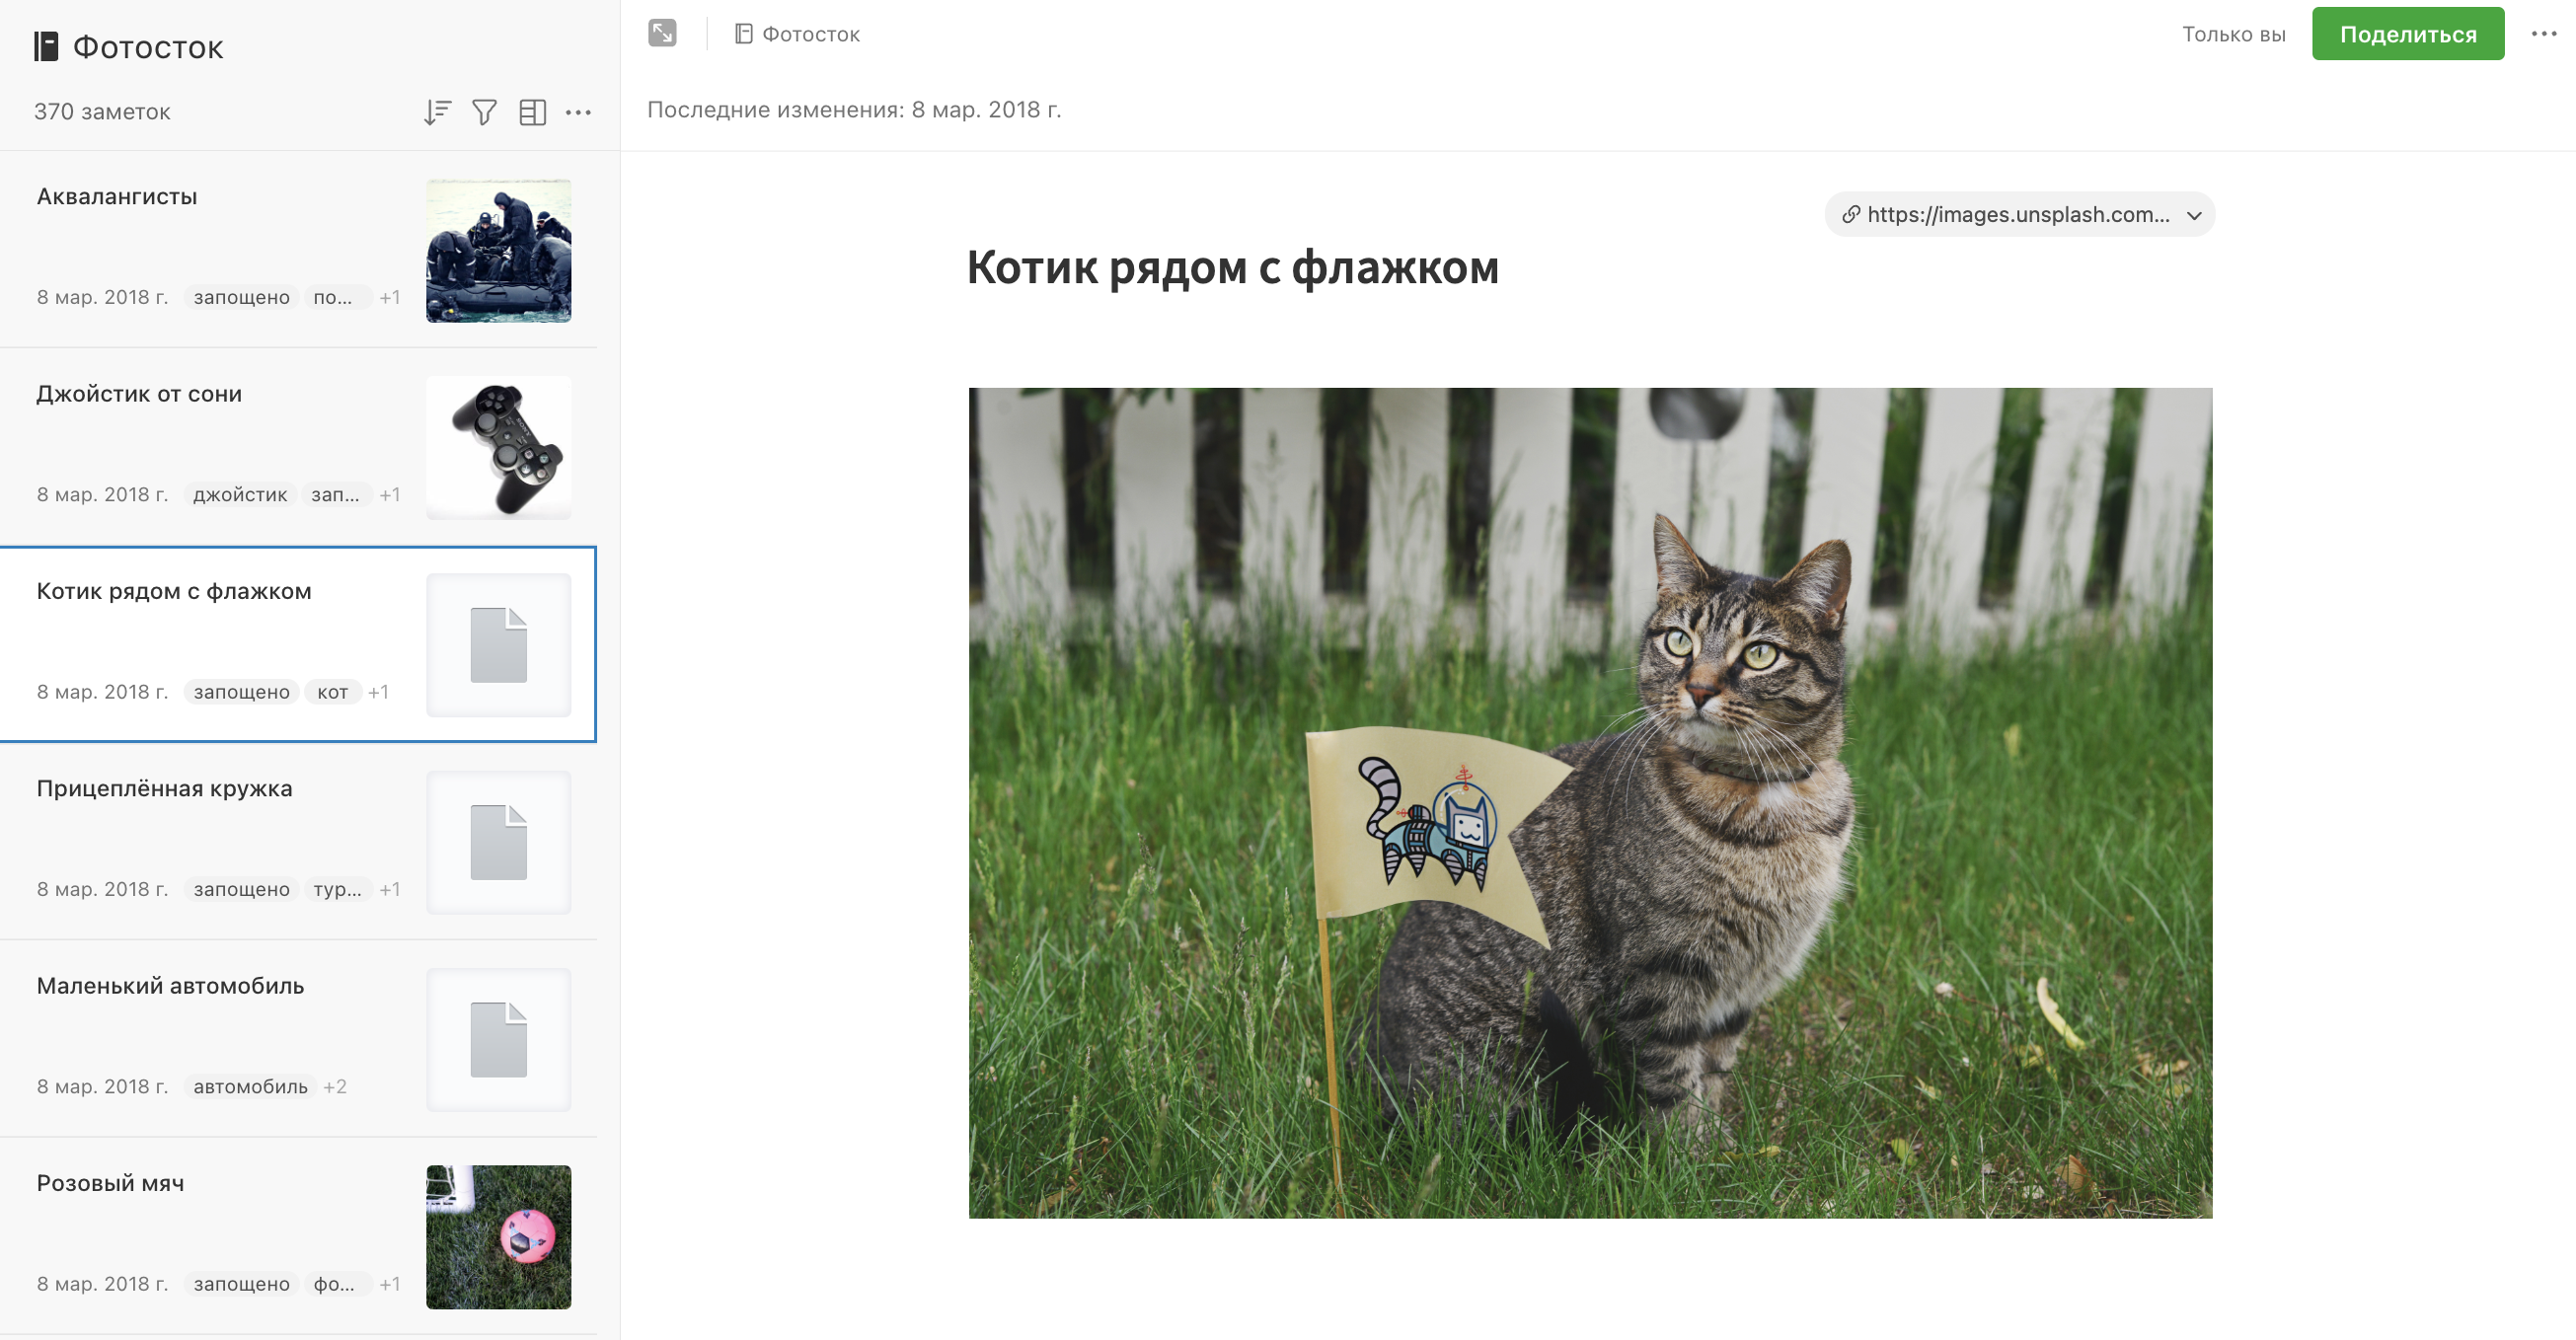 Фотография котика с плейсхолдером, вместо превью в Evernote.